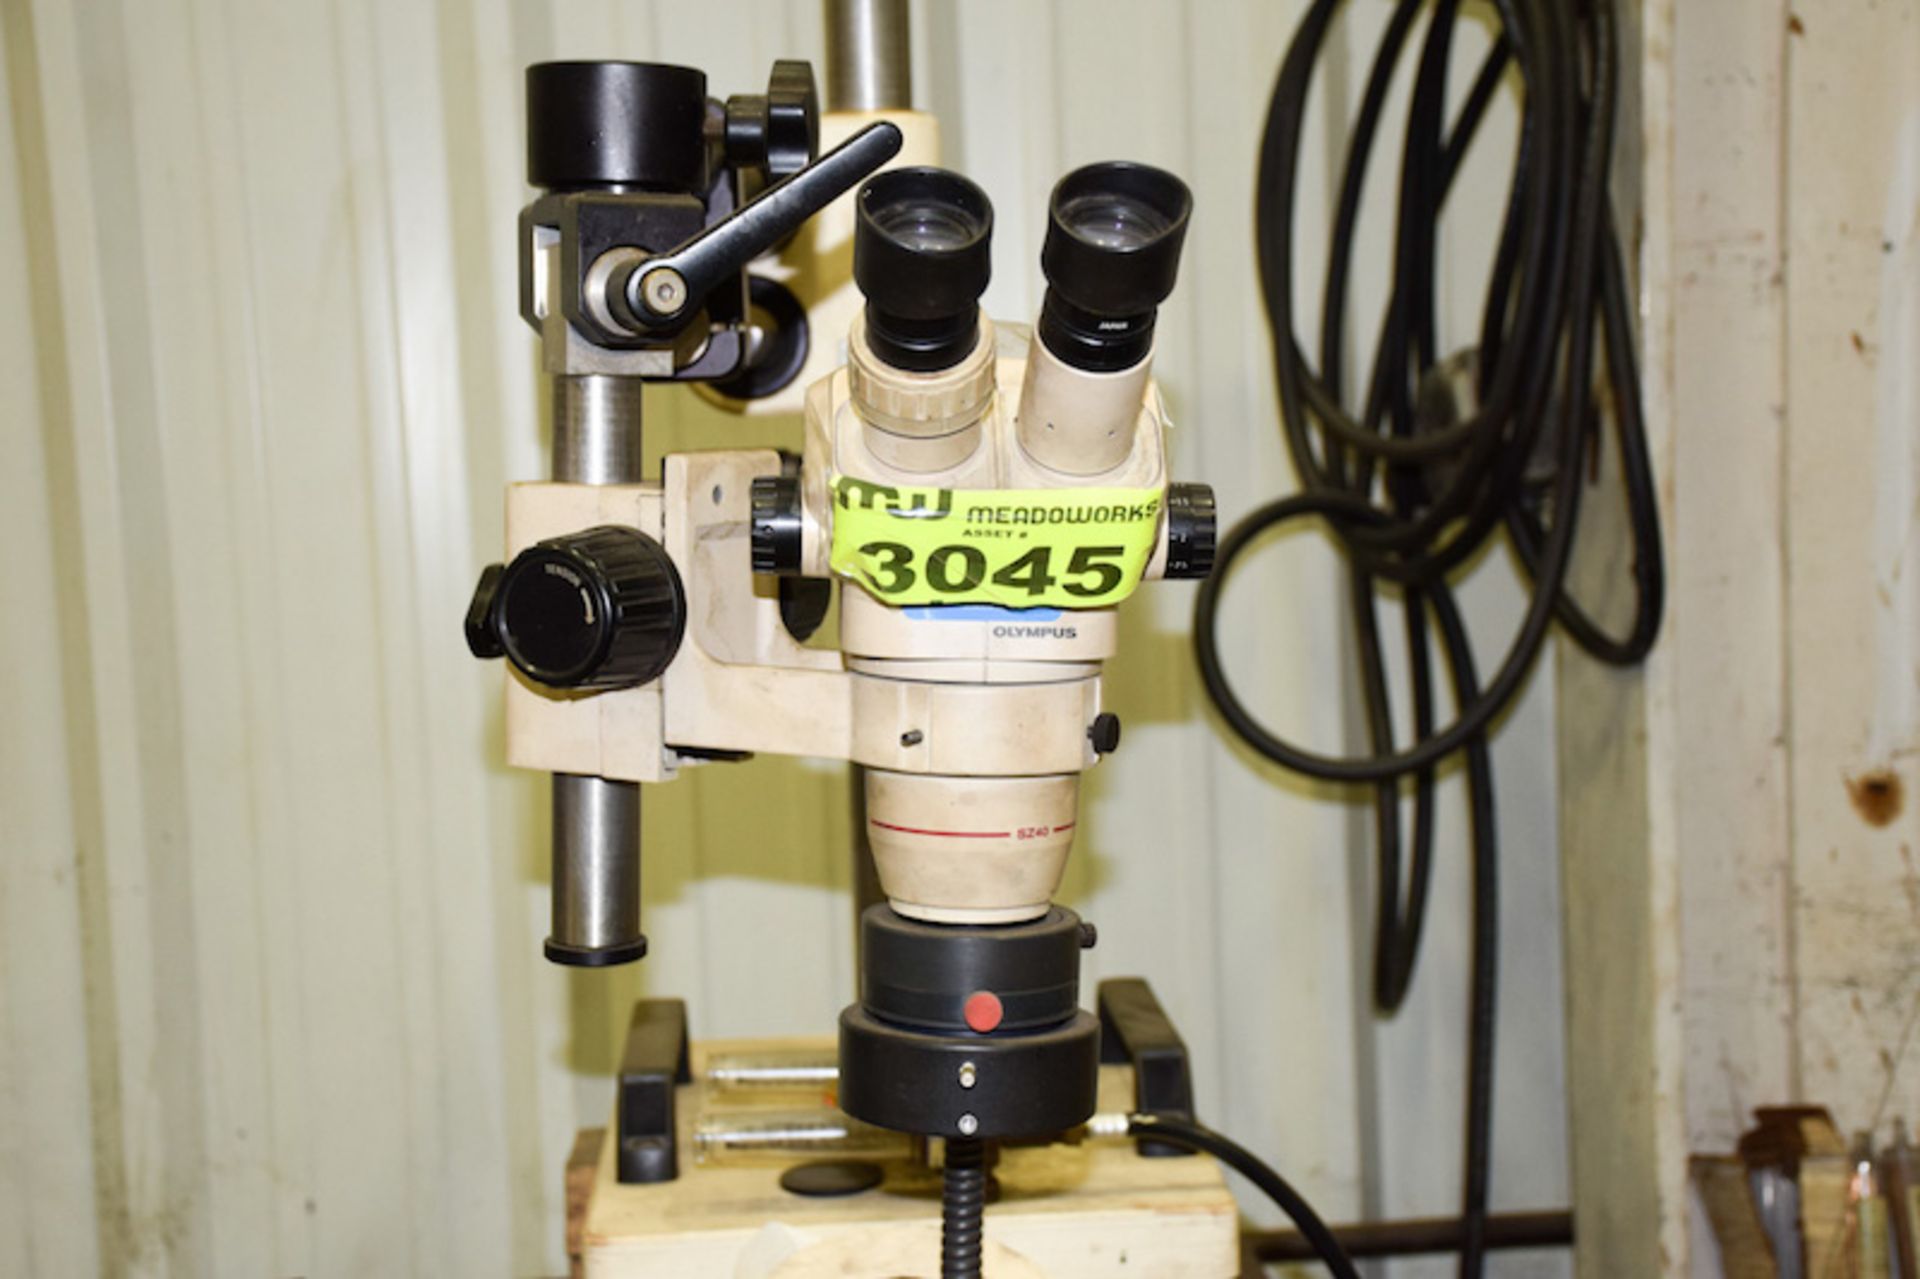 Olympus SZ40 Microscope - Image 2 of 4